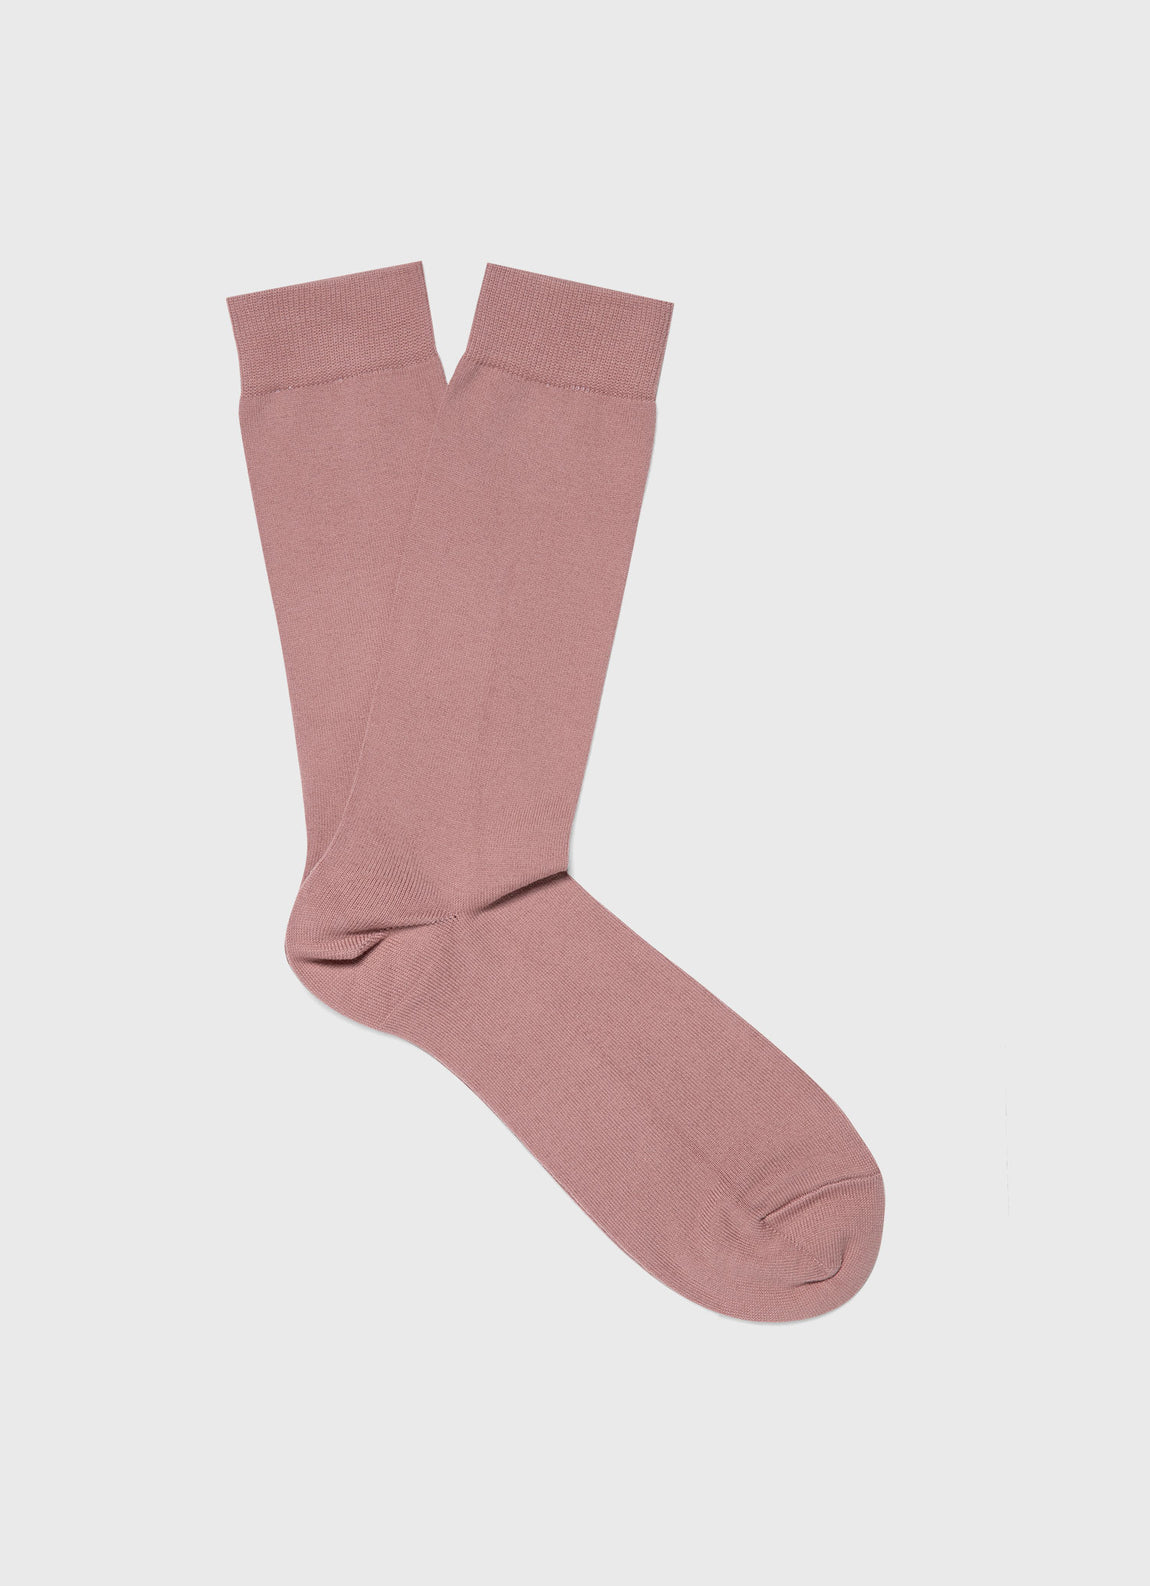 Men's Cotton Socks in Vintage Pink